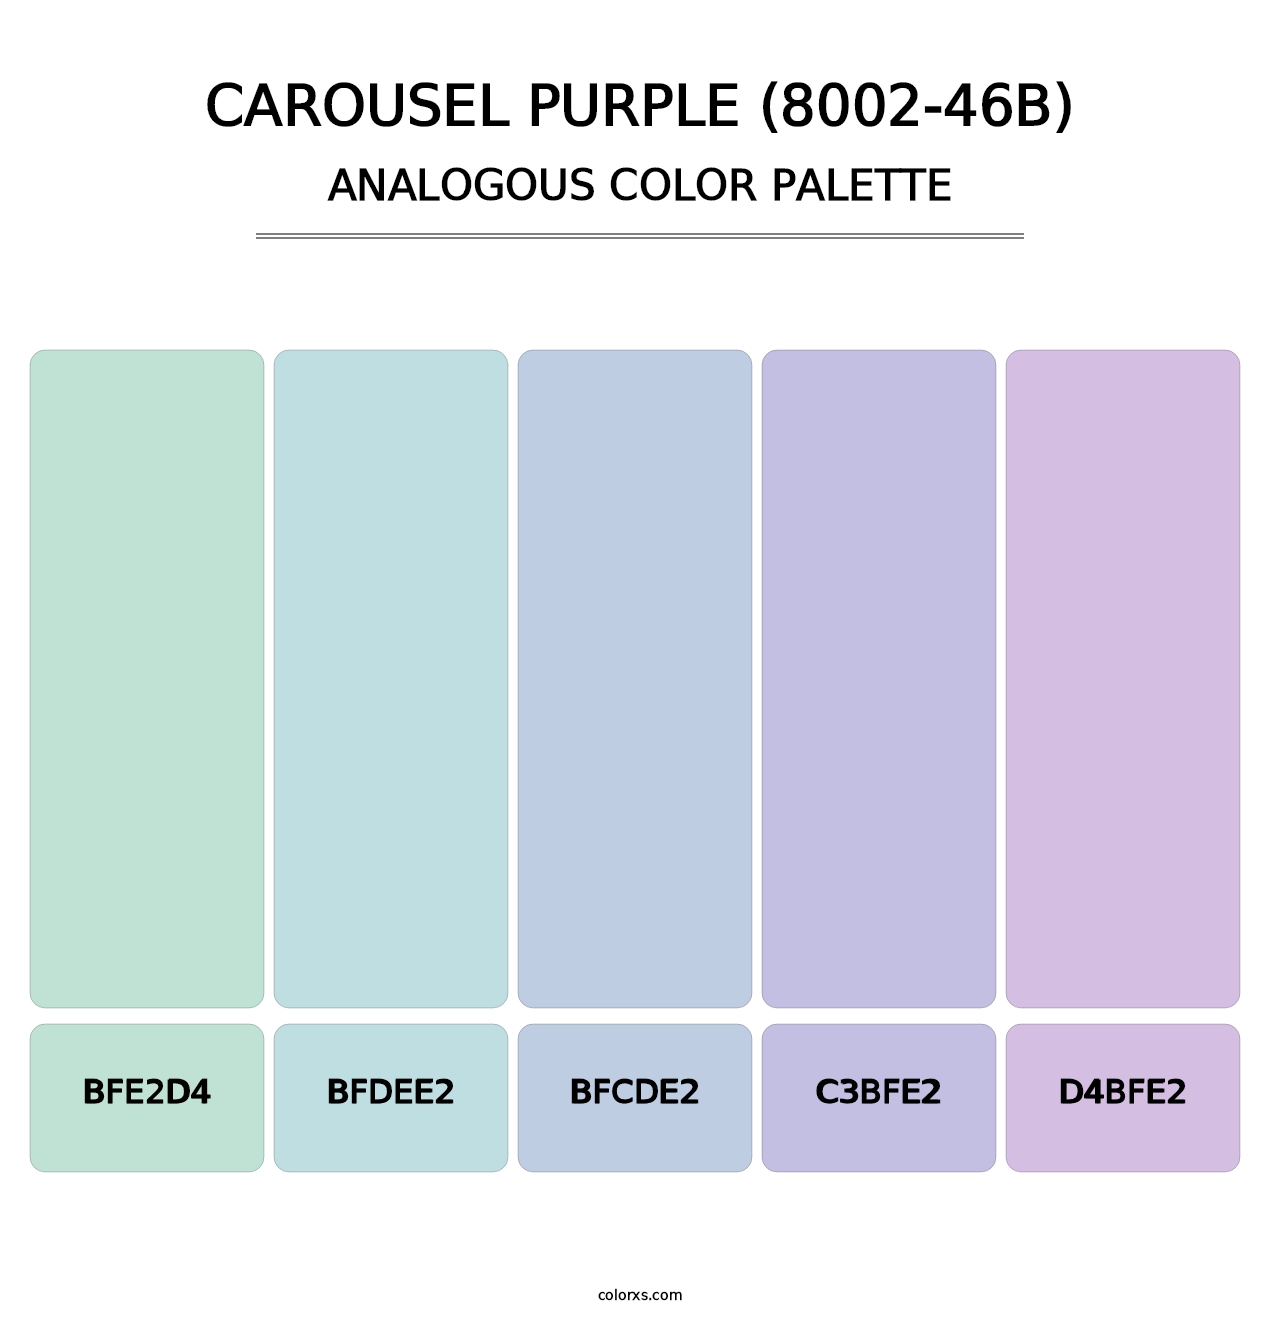 Carousel Purple (8002-46B) - Analogous Color Palette